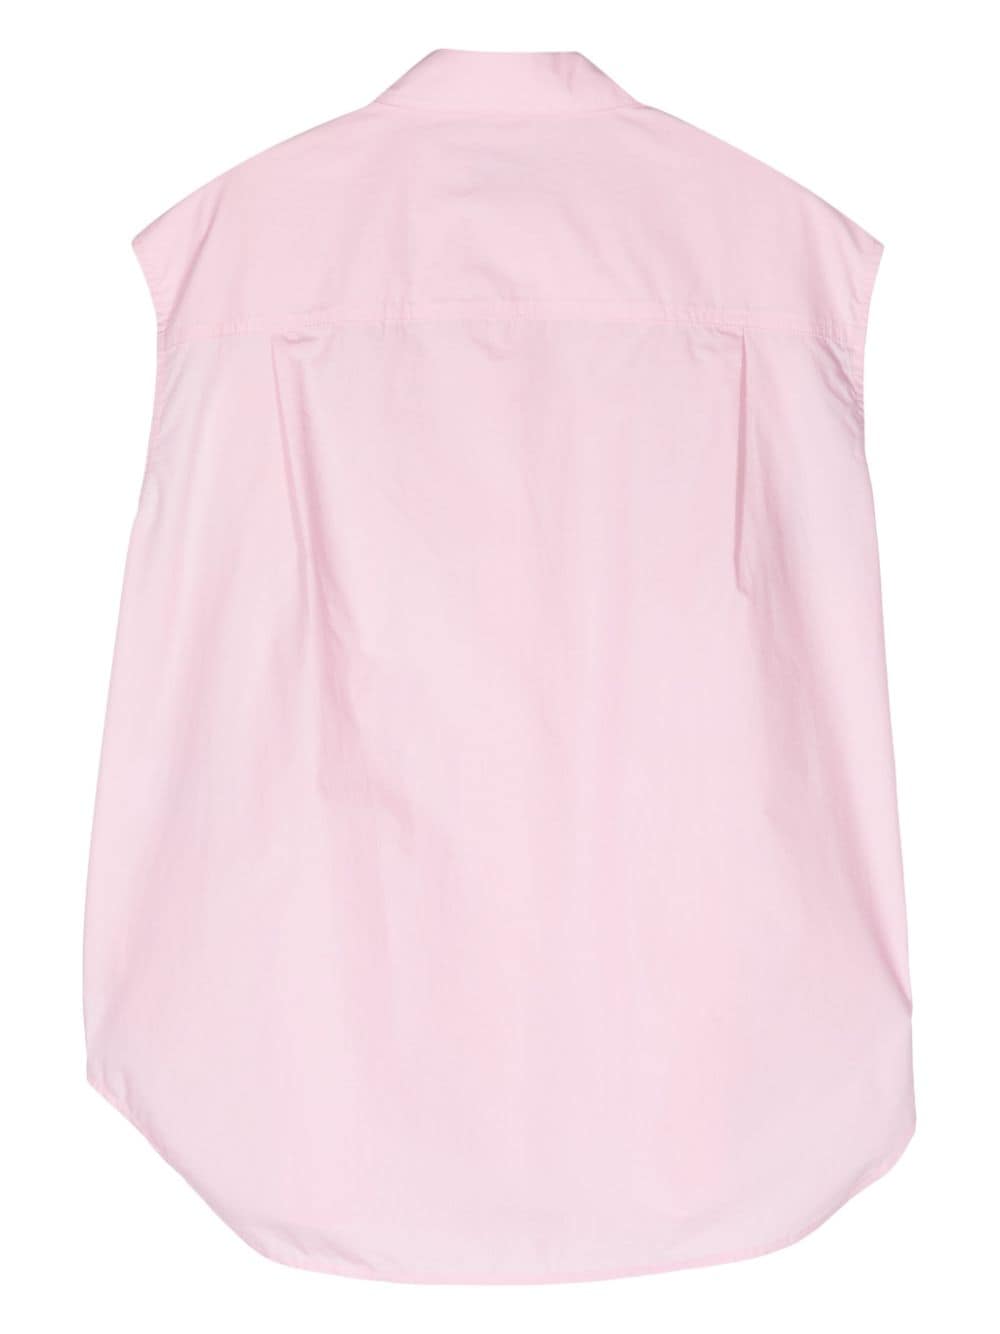 Essentiel Antwerp Fight katoenen blouse met bloemenpatch - Roze